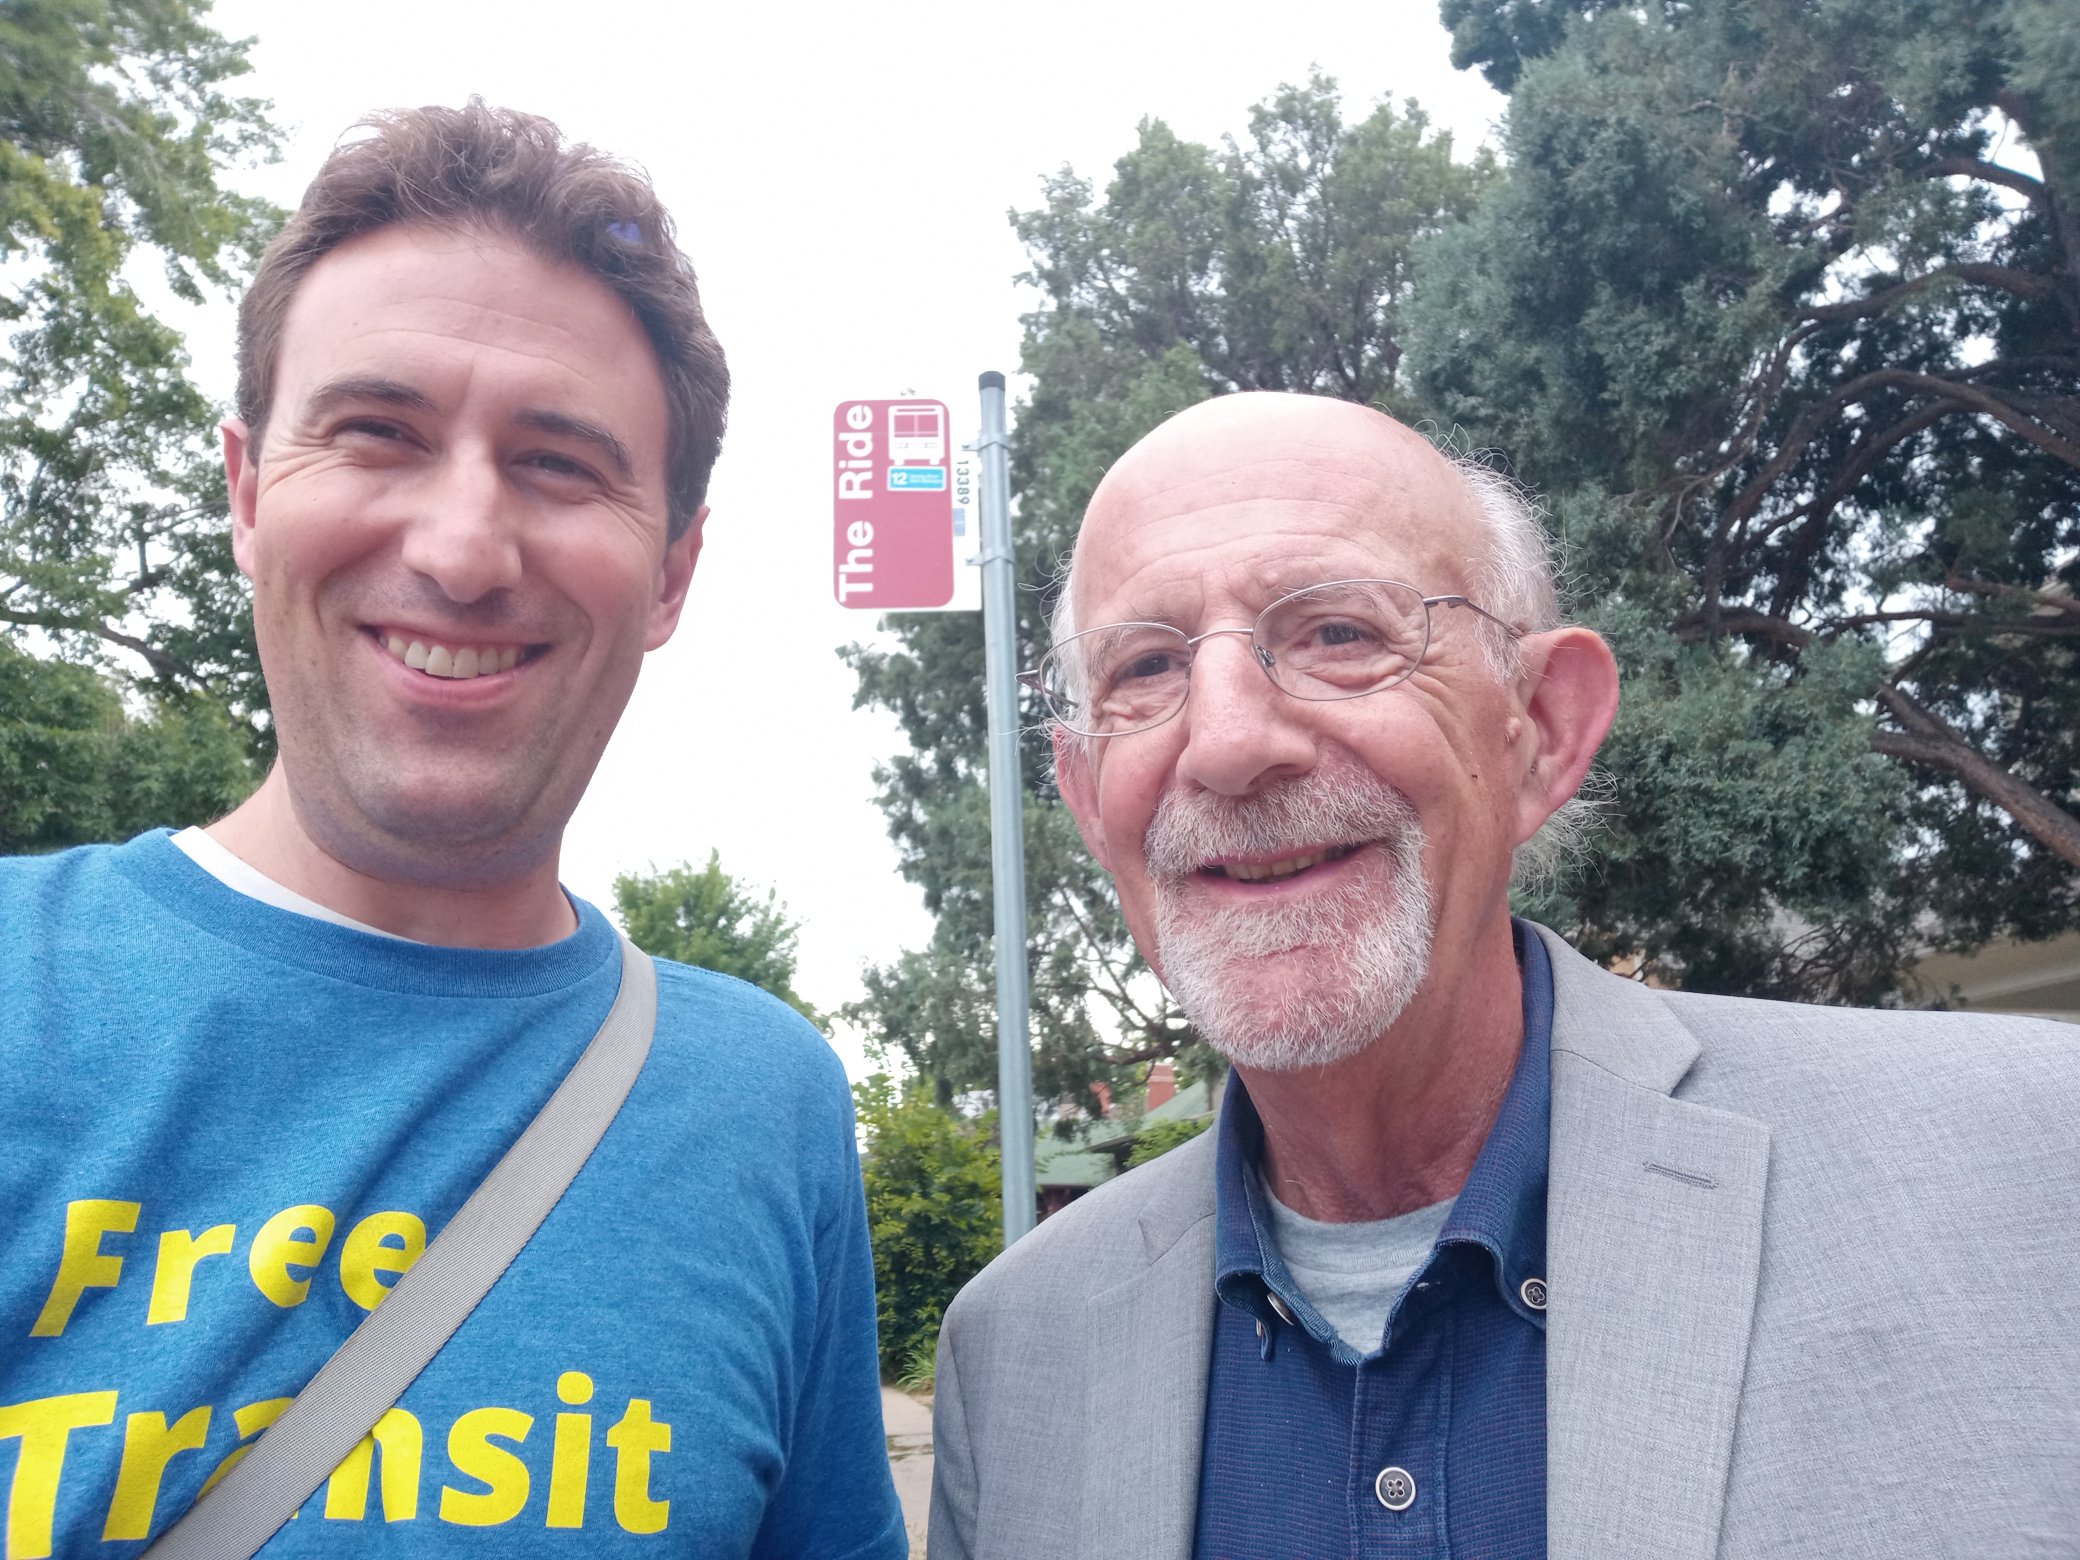 Danny Katz with Denver City Councilman Paul Kashmann at Regional Transportation District bus stop.